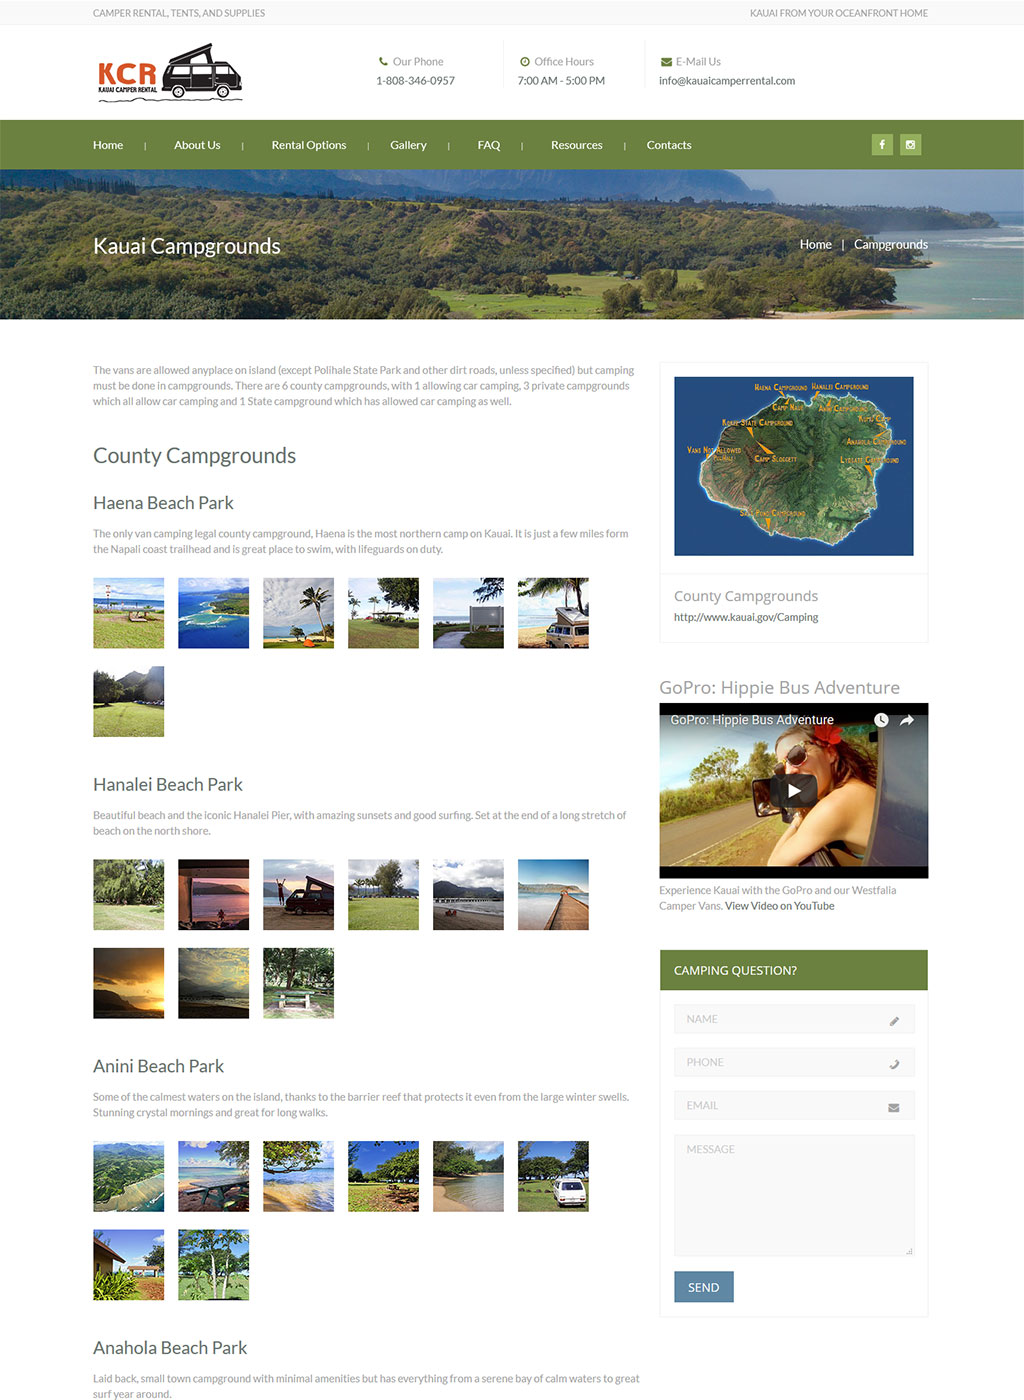 Camper rental page developed for Kauai camper rental business